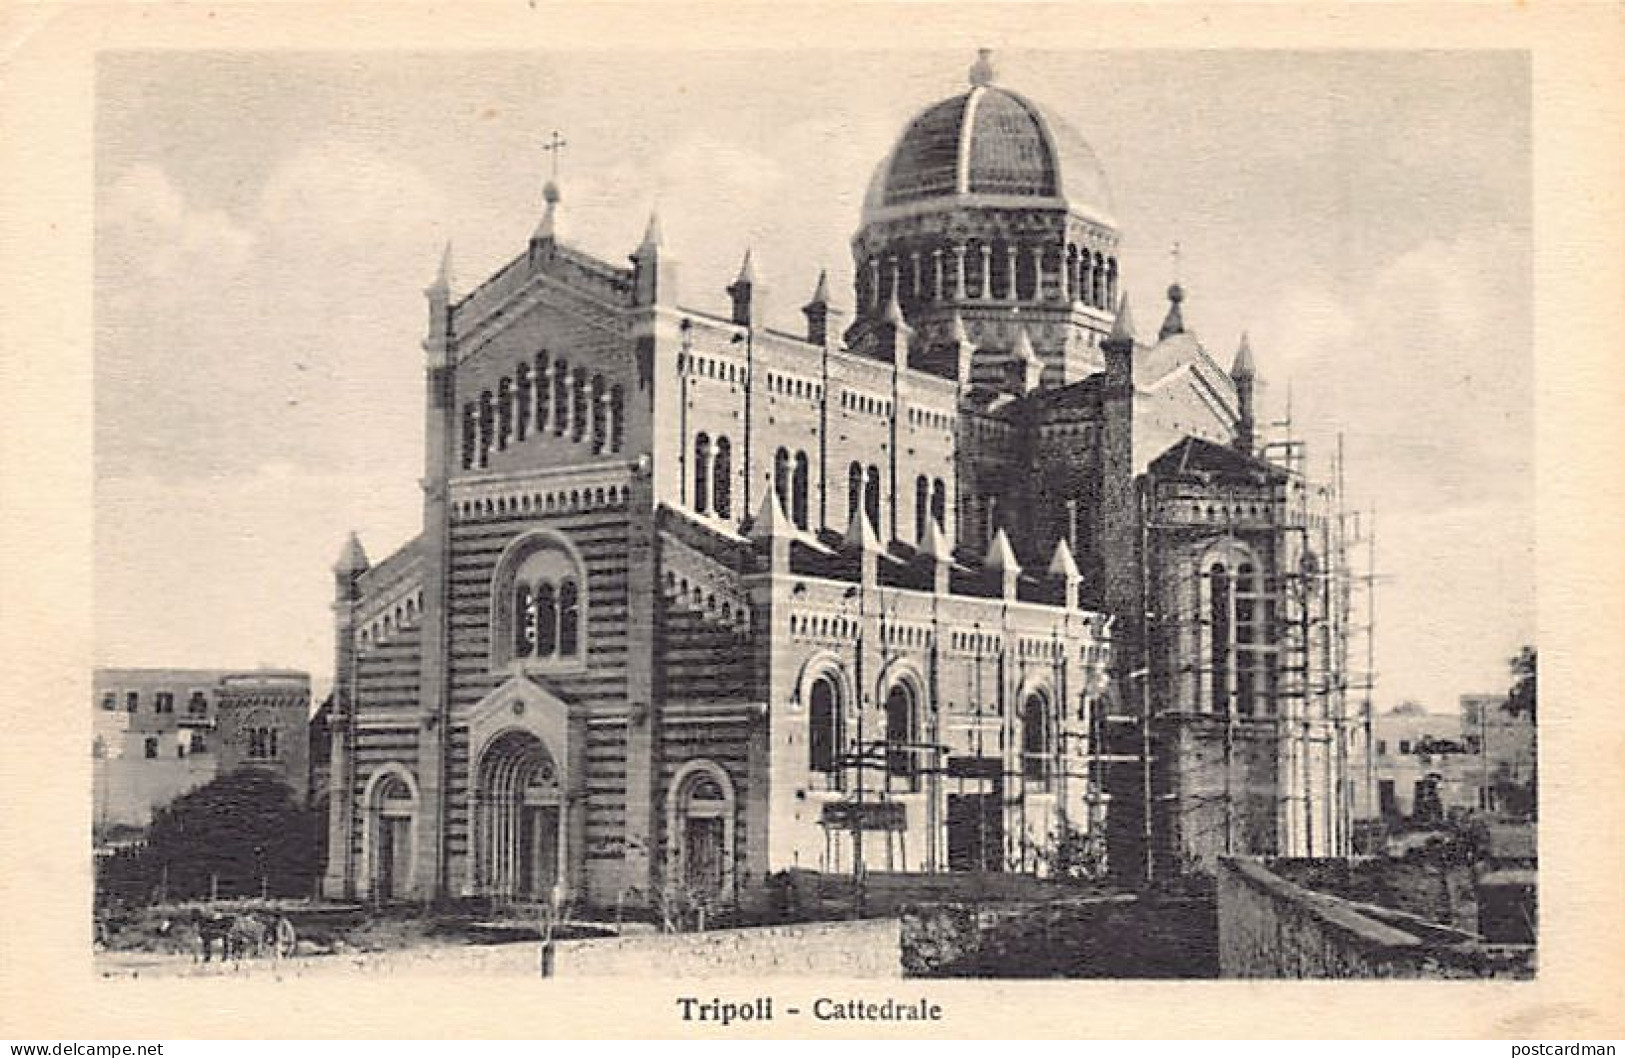 Libya - TRIPOLI - Cathedral - Libyen